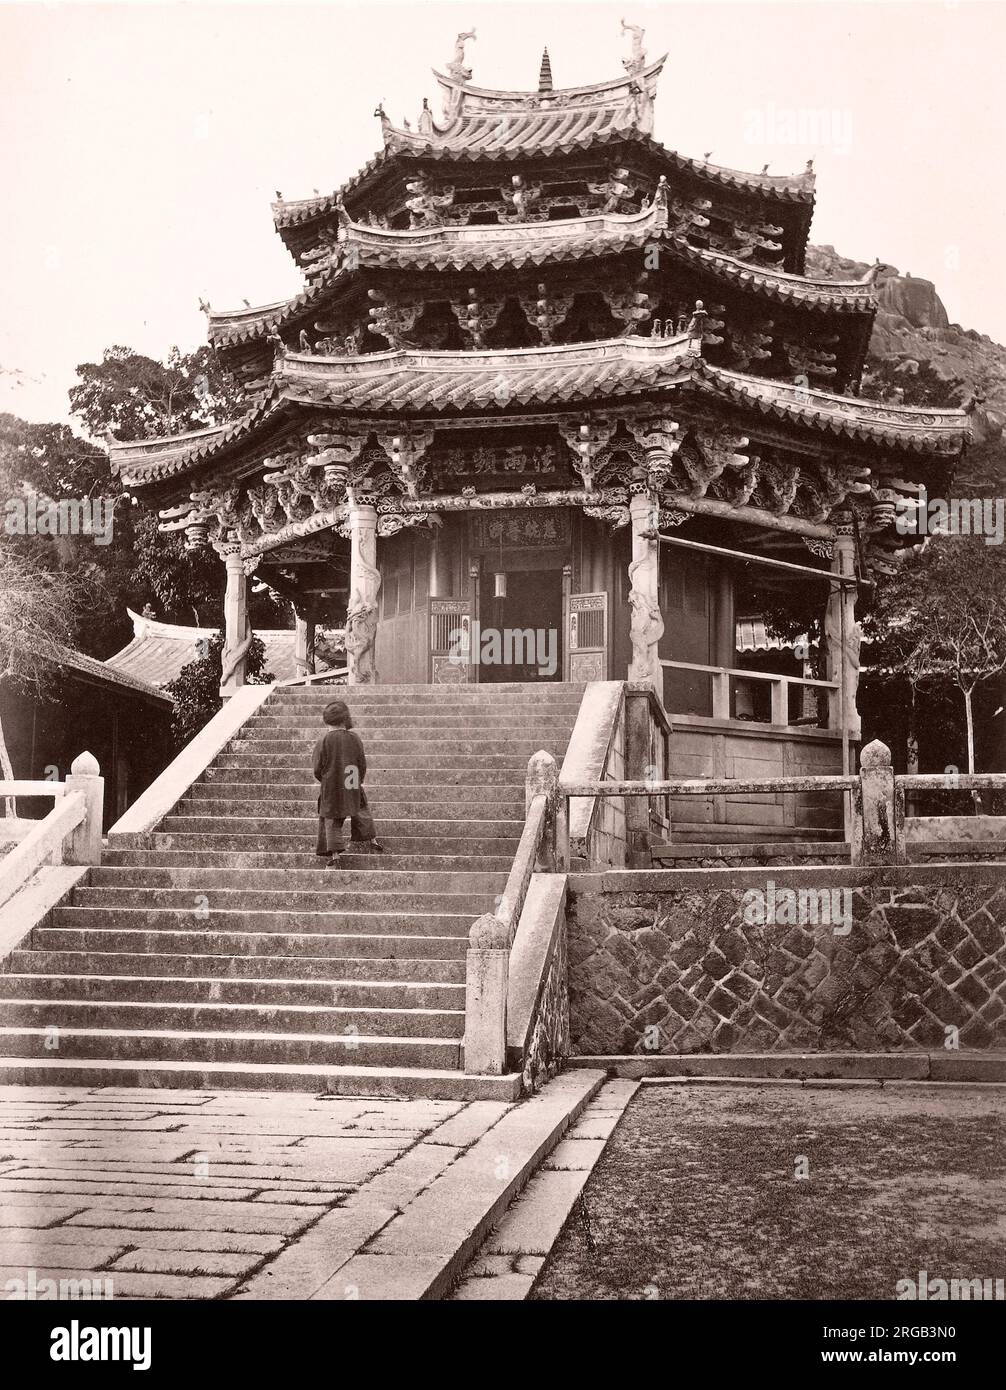 John Thomson (14 juin 1837 - 29 septembre 1921) photographe écossais, actif en Chine vers 1870, d'un album de ses images: temple at Amoy, Xiamen Banque D'Images